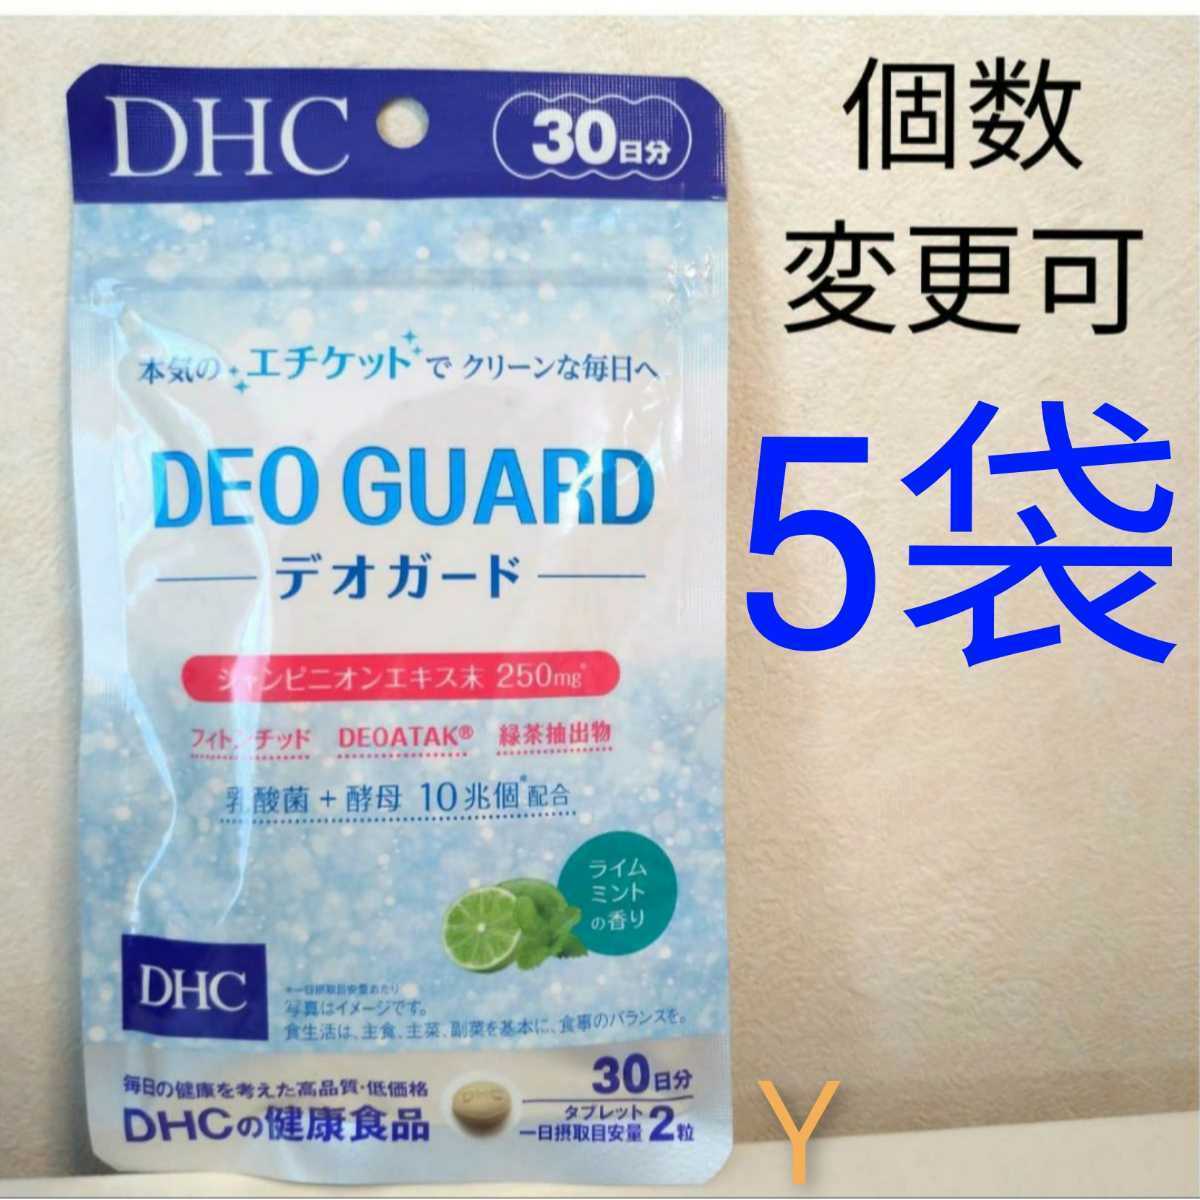 ☆最安値に挑戦 DHC 香るブルガリアンローズカプセル 30日分x2個